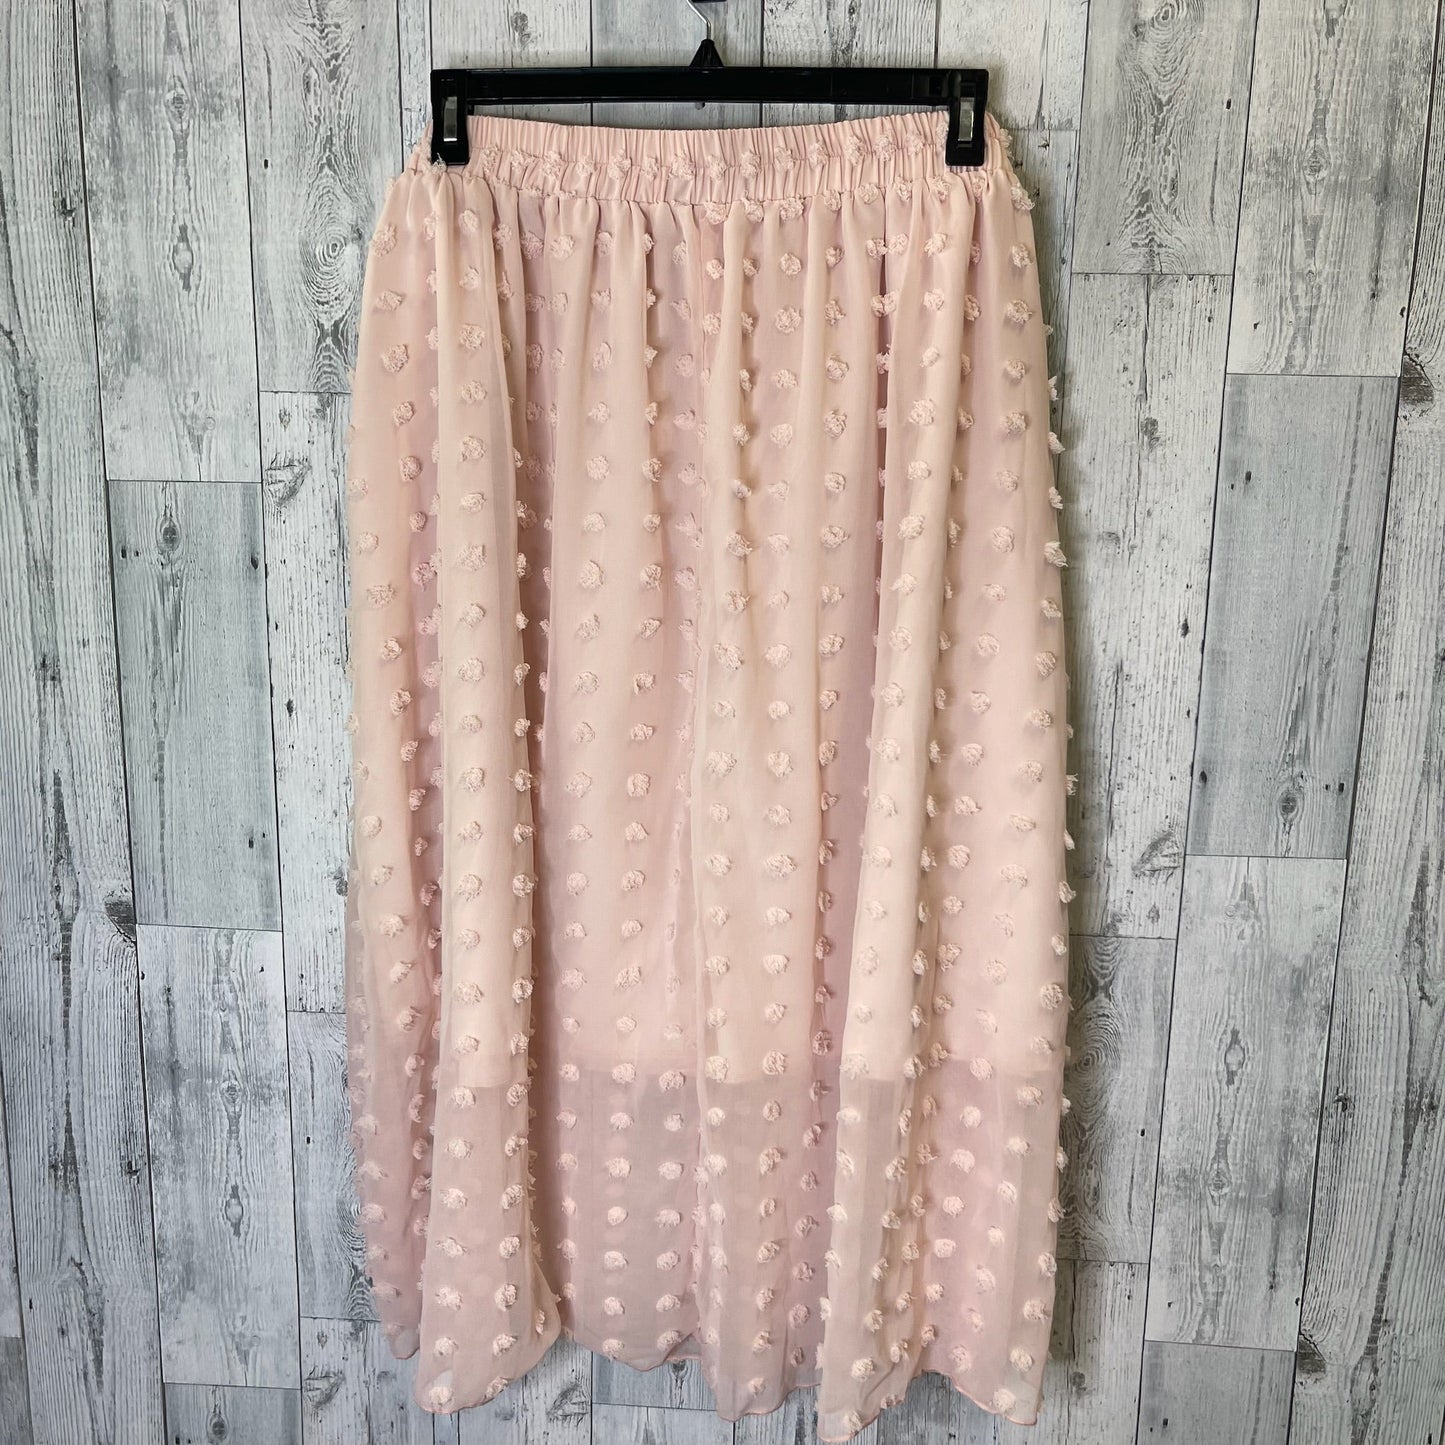 Skirt Midi By Shein  Size: 4x